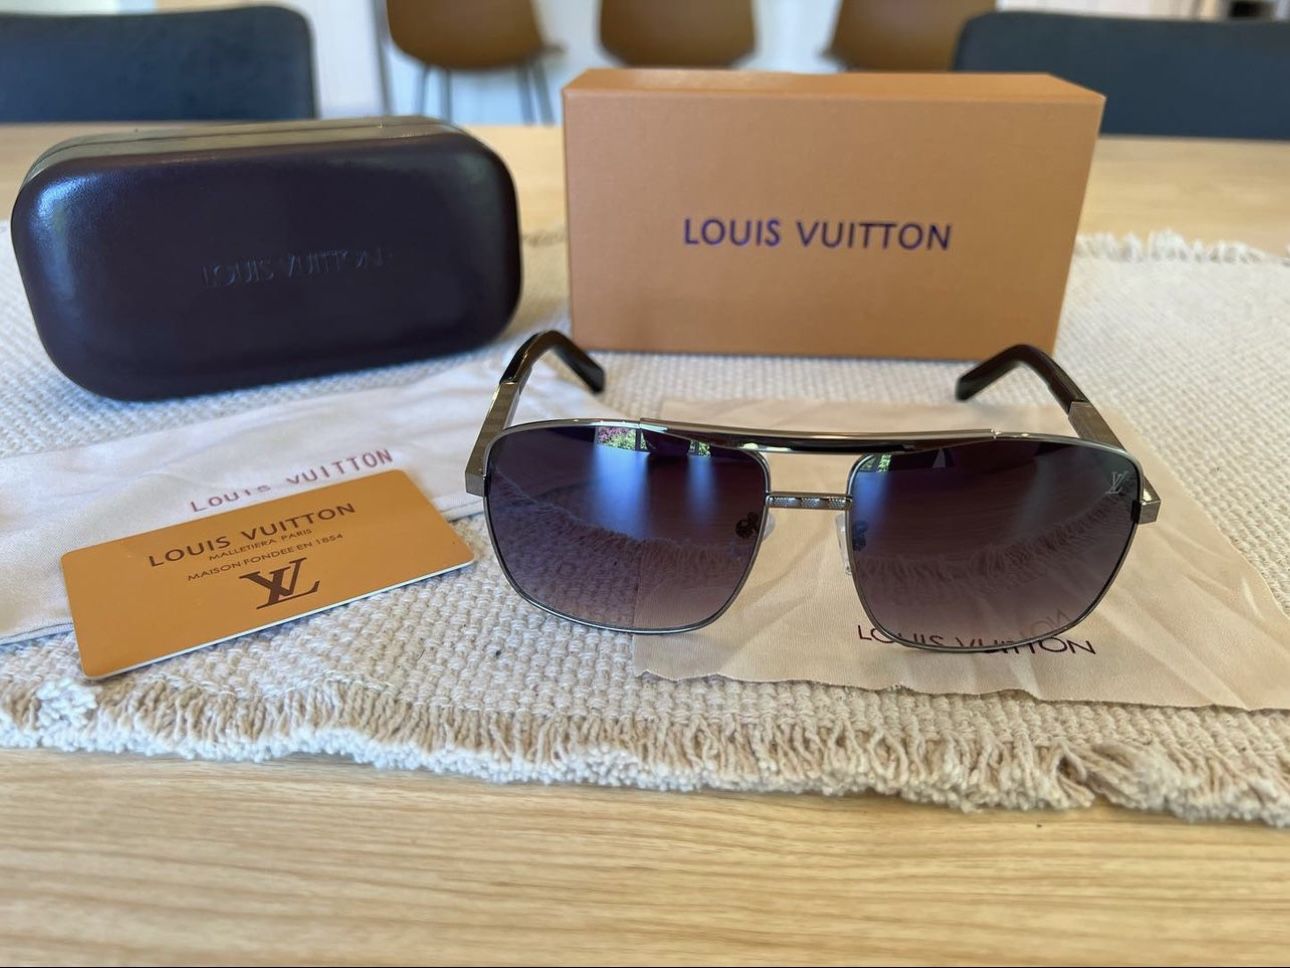 Lv Attitude Sunglasses for Sale in Portland, OR - OfferUp